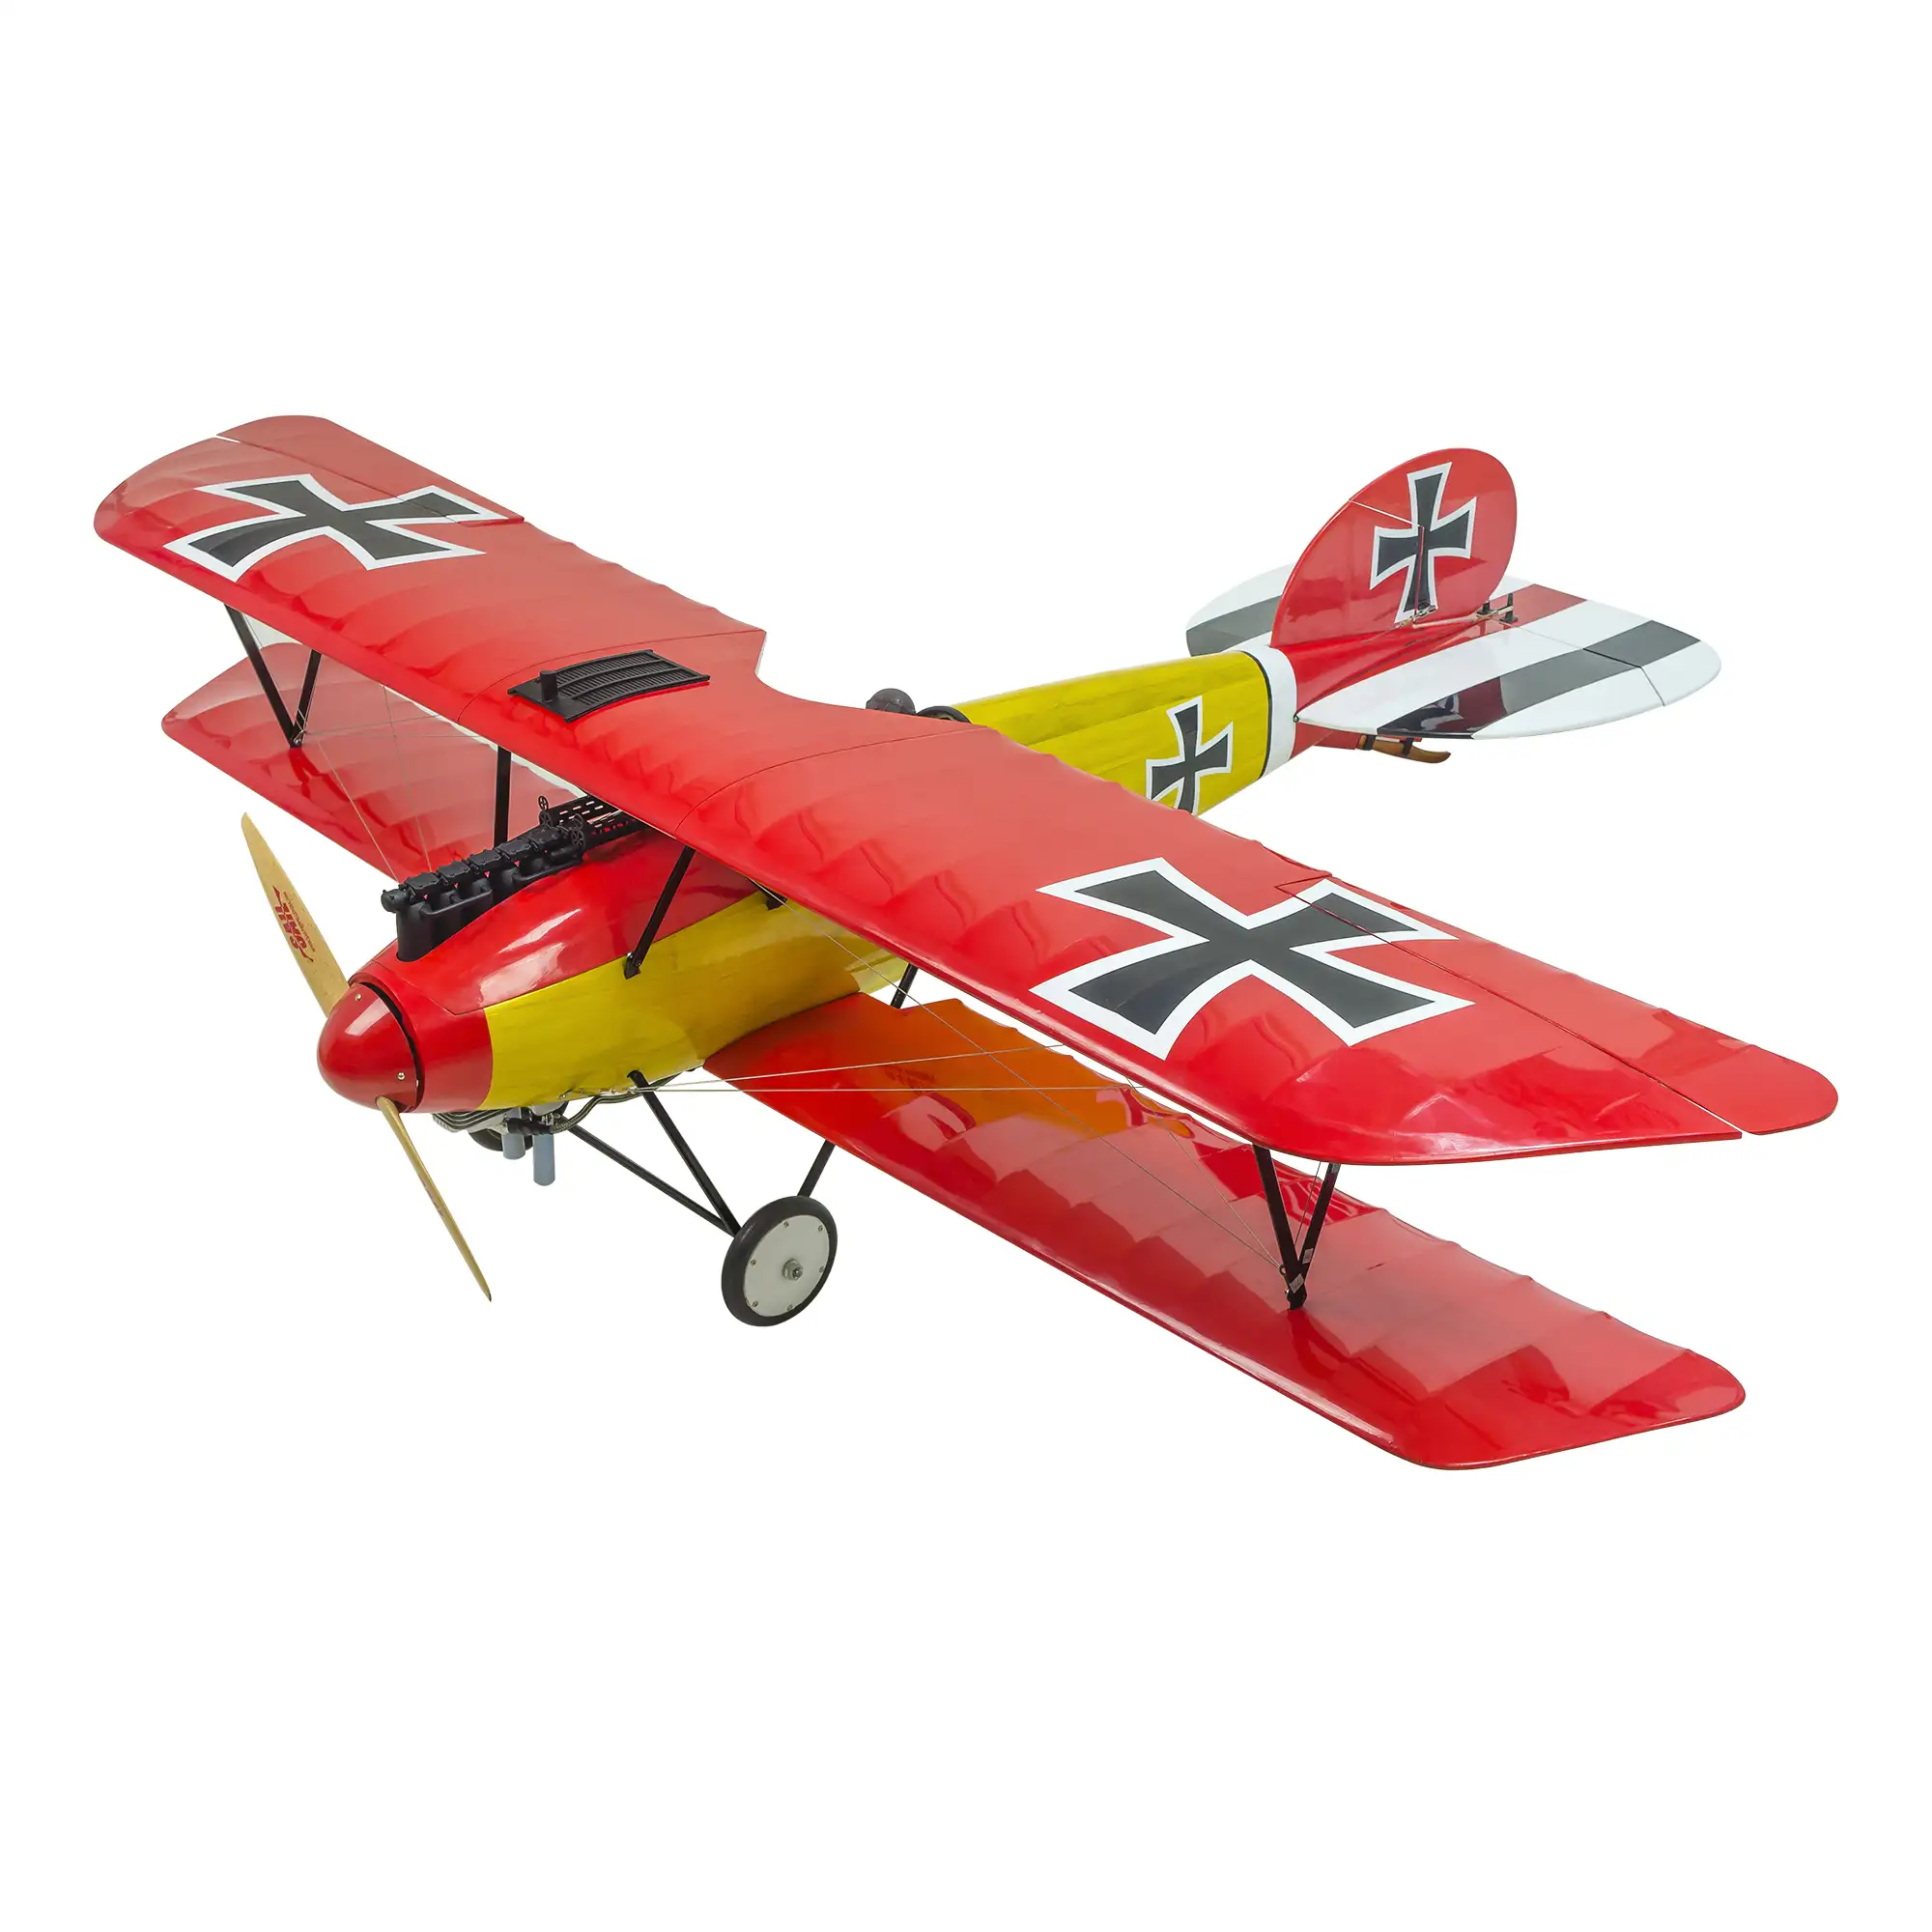 Dacing Wings Hobby-avión a escala DIII, Avión de Control remoto eléctrico y de Gas, 1800mm, Wingspan, Balsawood, ARF, Albatros